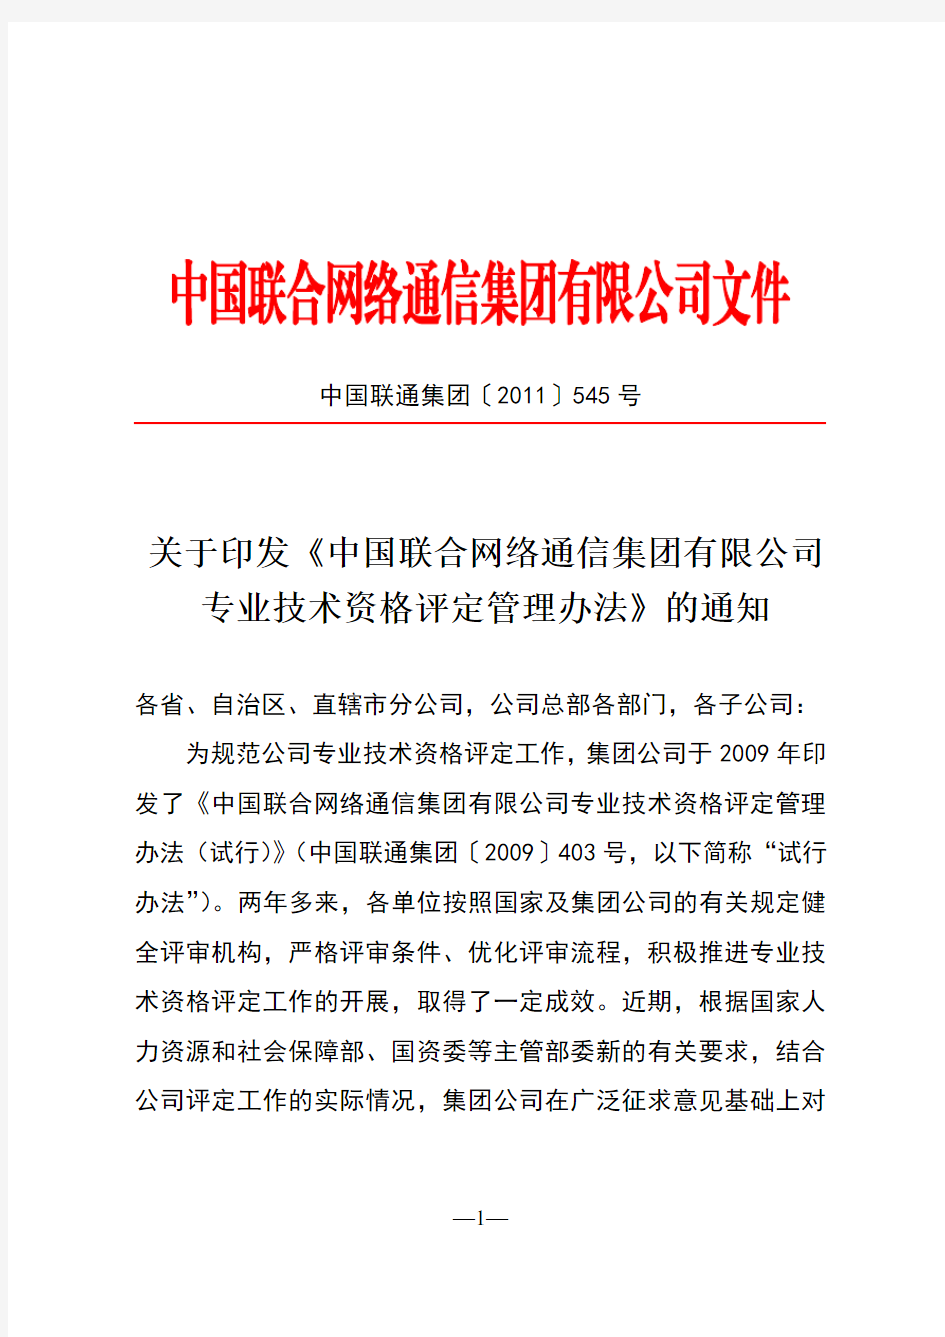 关于印发《中国联合网络通信集团有限公司专业技术资格评定管理办法》的通知